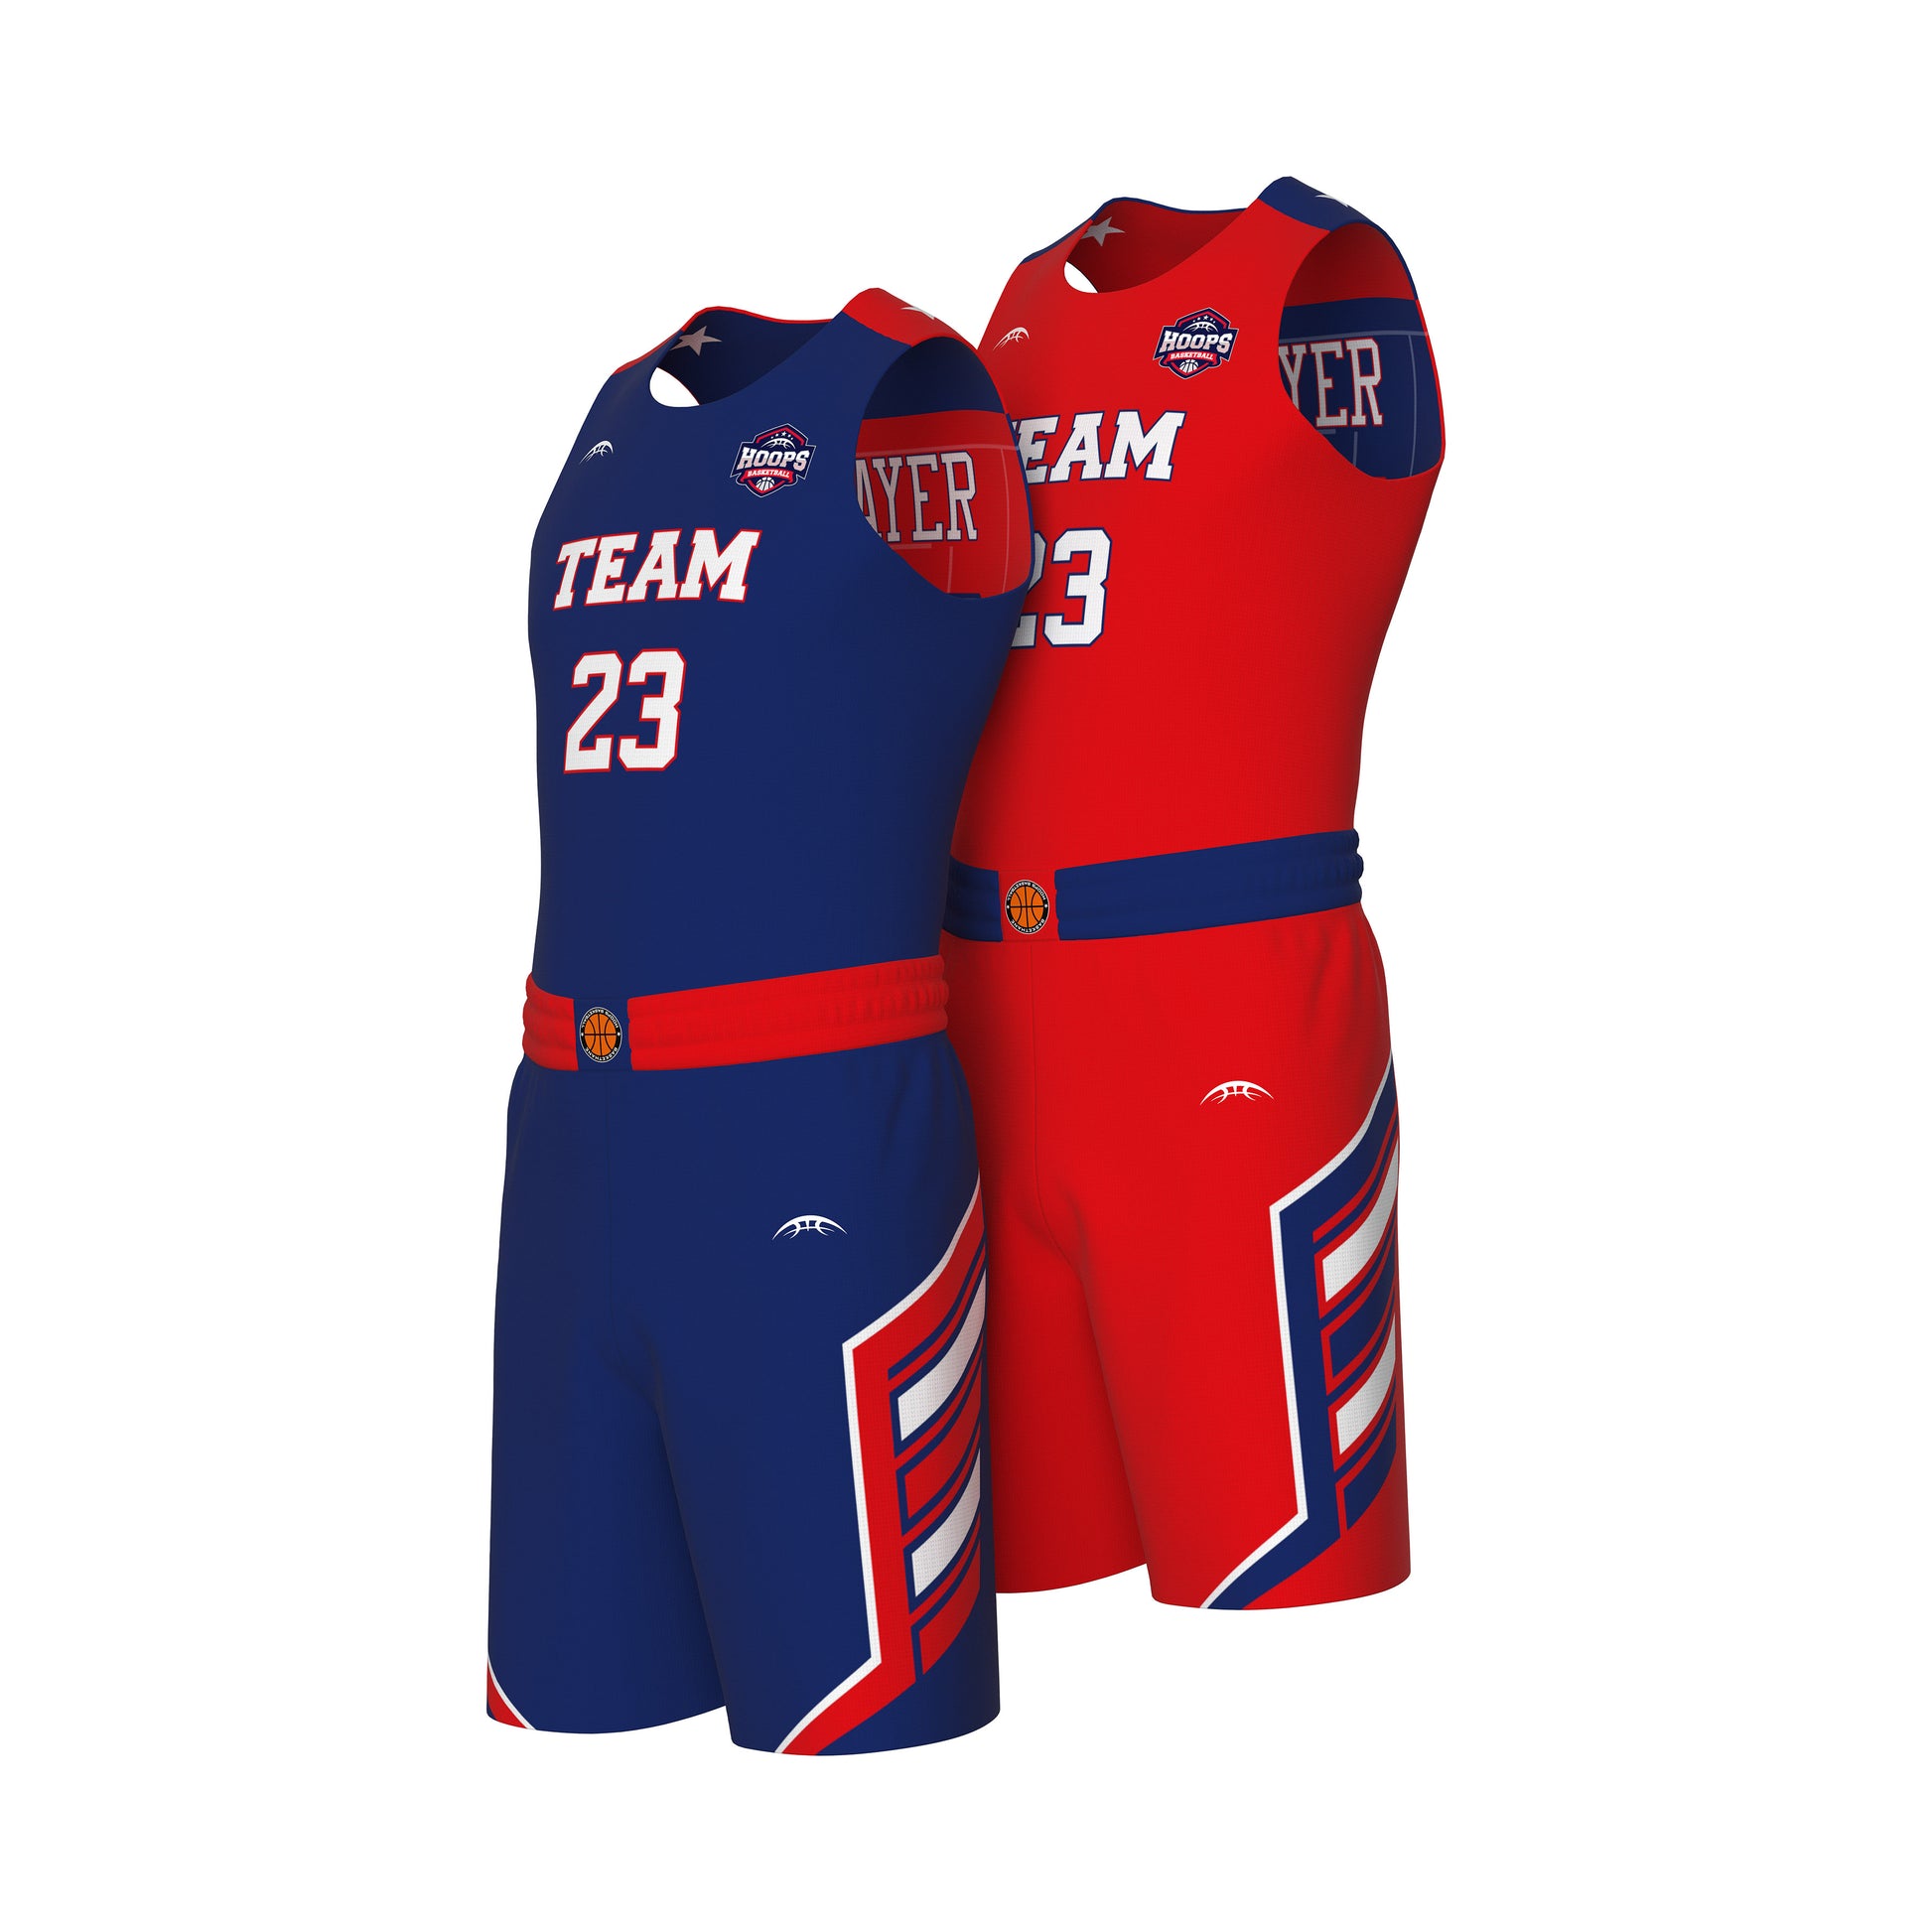 Sport Design Red/white/blue Basketball